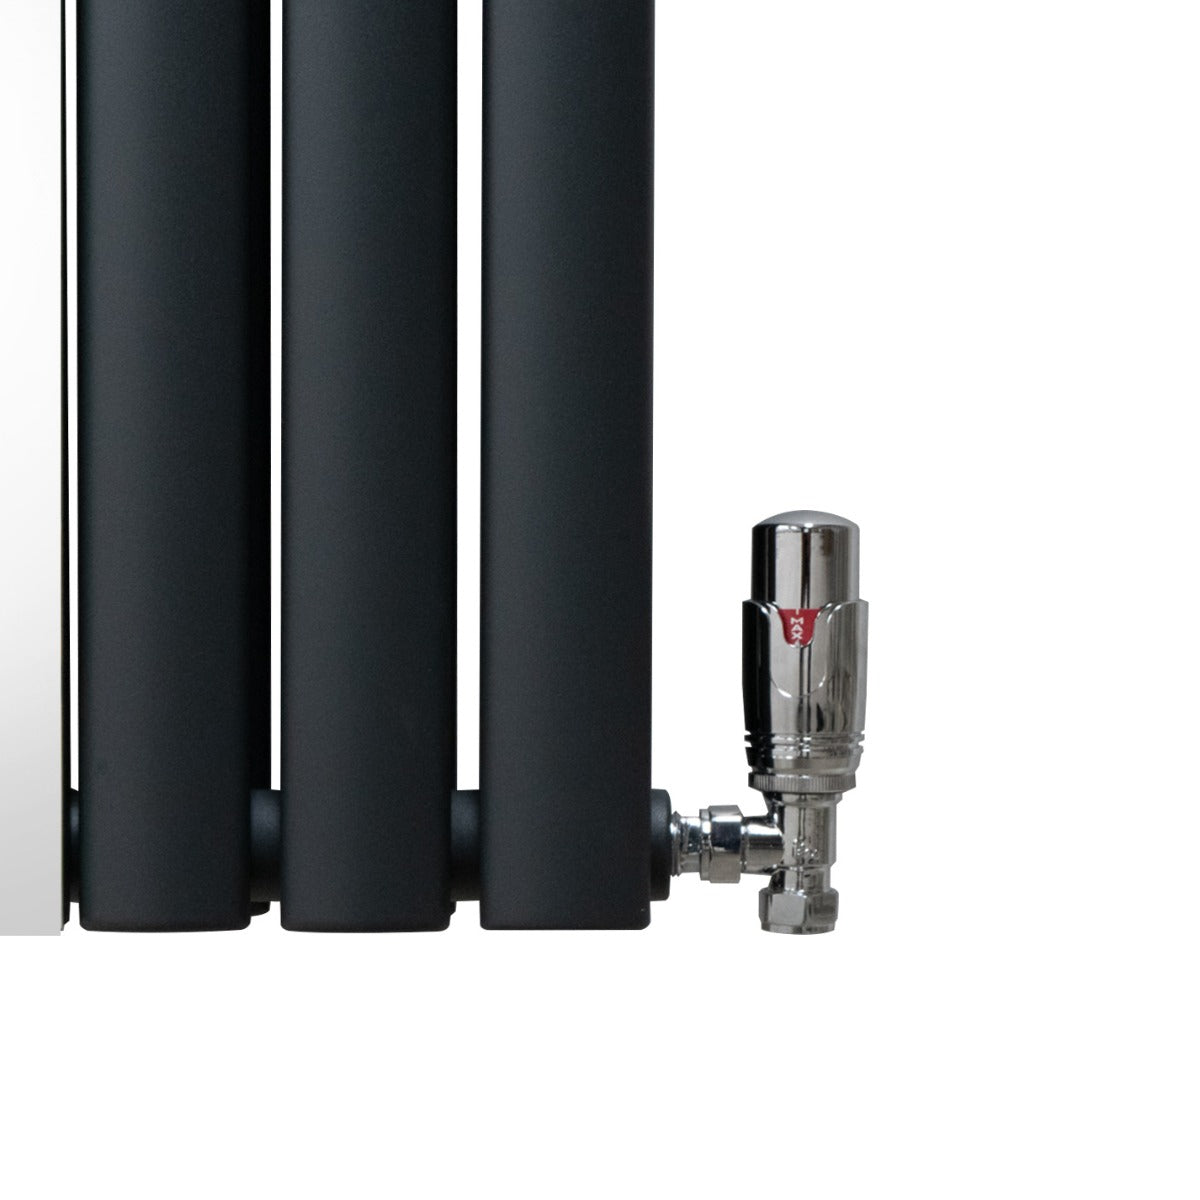 Radiateur à Colonne Ovale avec Miroir & Valves - 1800mm x 500mm – Gris Anthracite